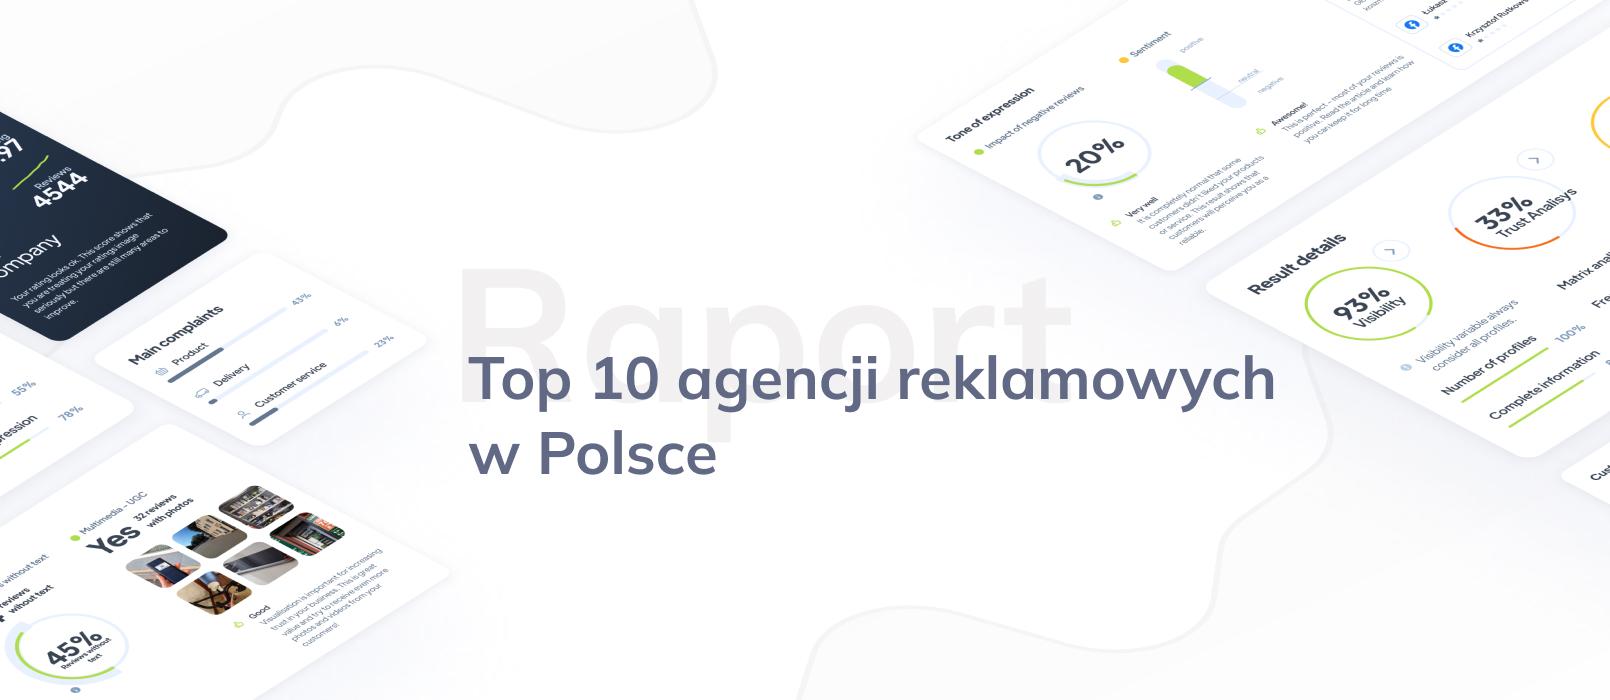 10 najlepszych agencji reklamowych w Polsce - ranking na podstawie opinii Google